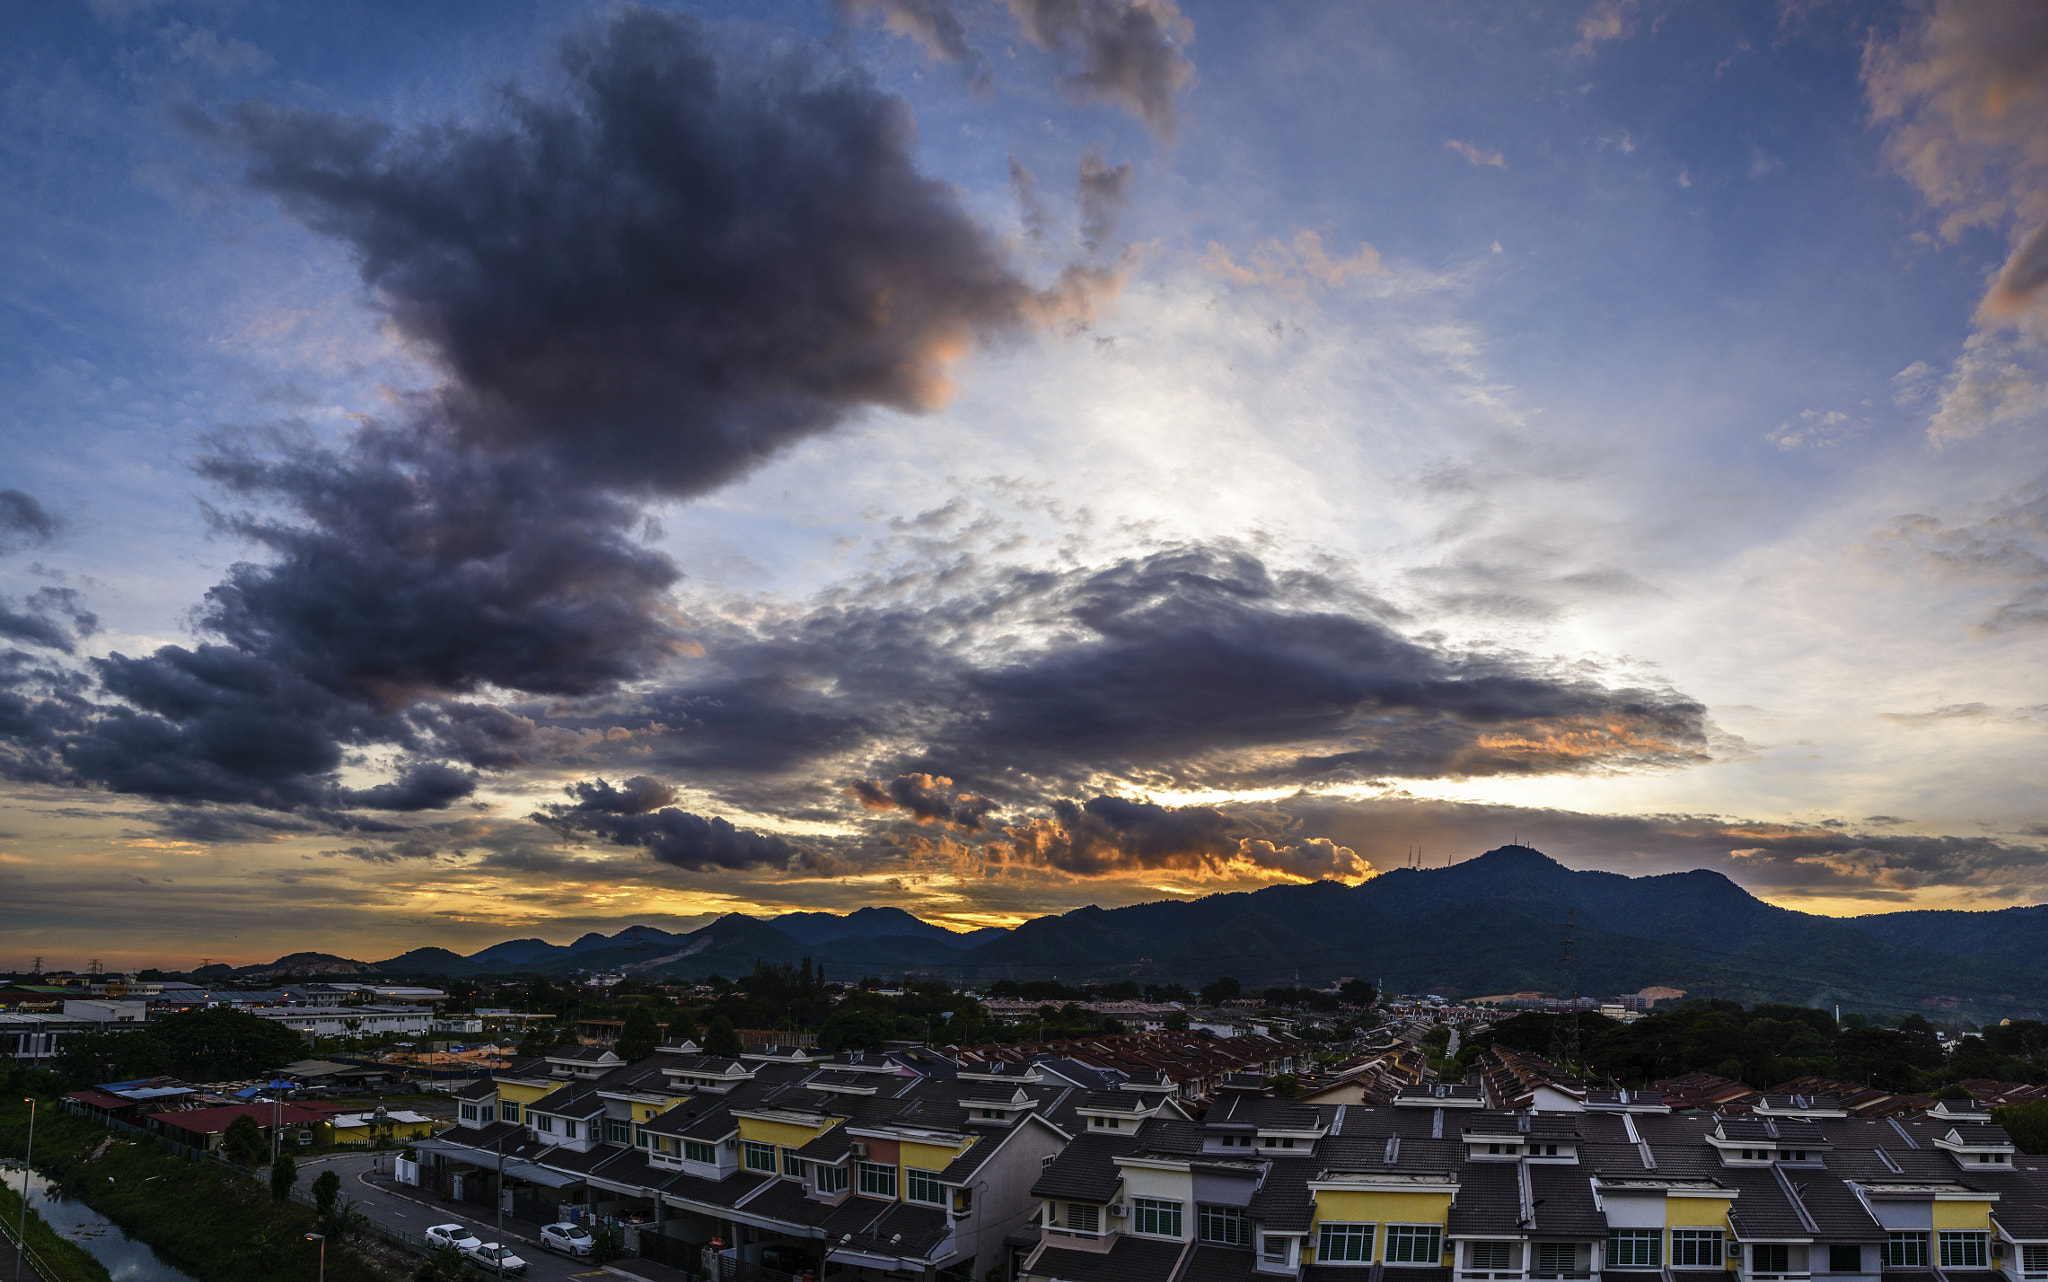 Nikon D610 sample photo. Menglembu sunset photography